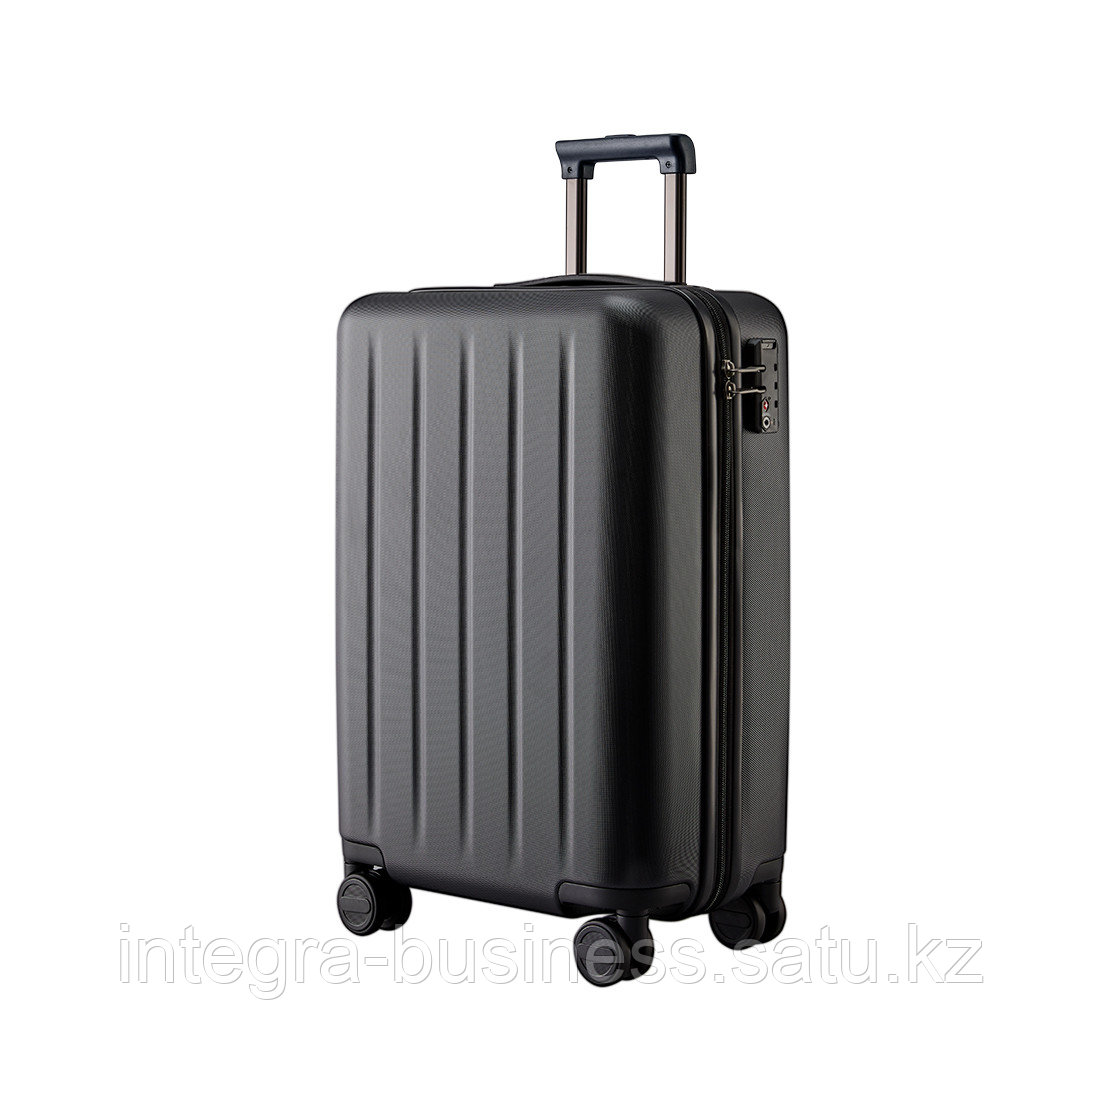 Чемодан NINETYGO Danube Luggage 20'' (New version) Черный, фото 1